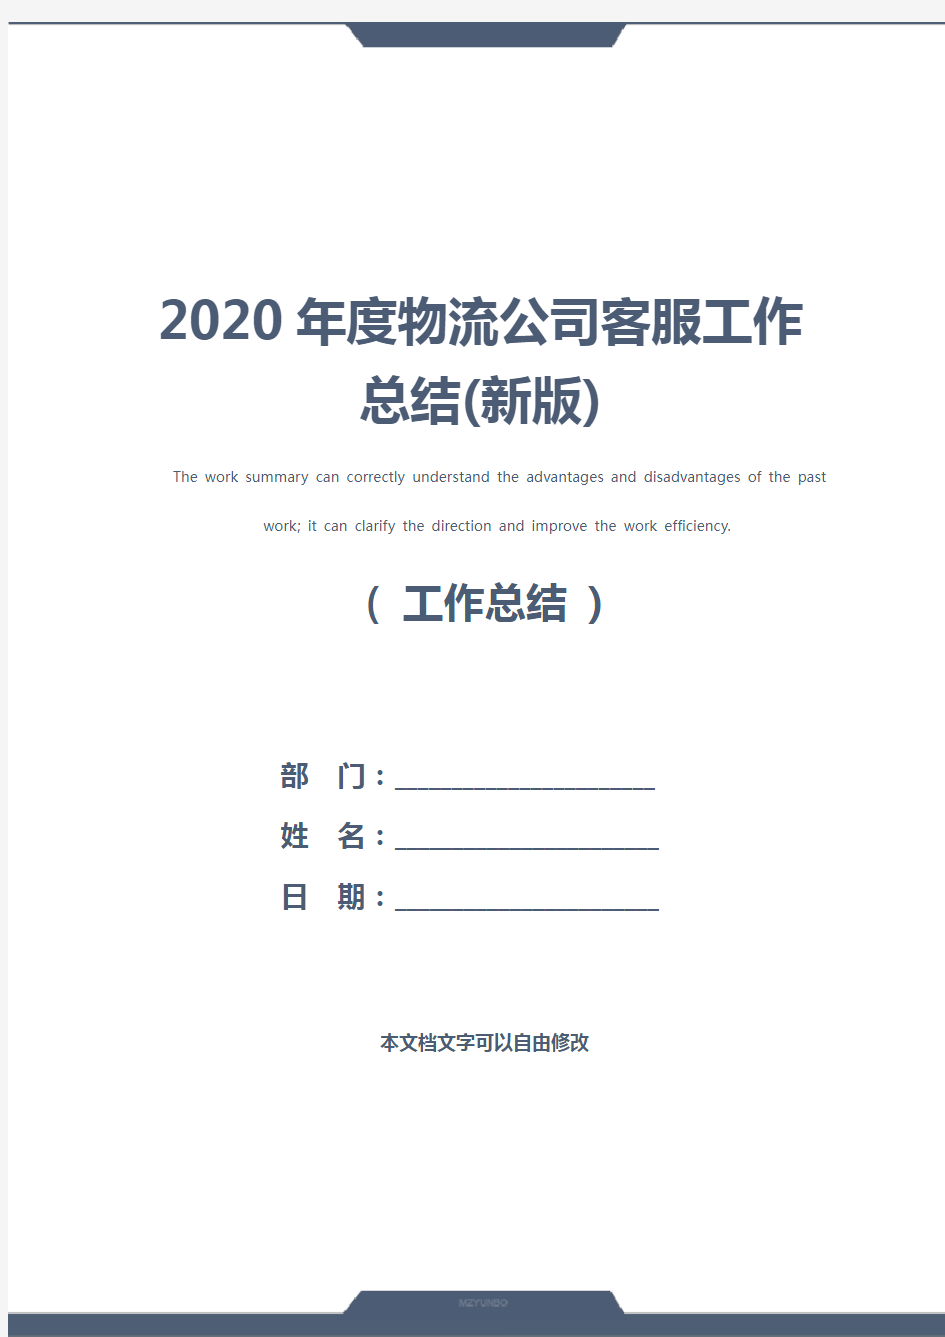 2020年度物流公司客服工作总结(新版)